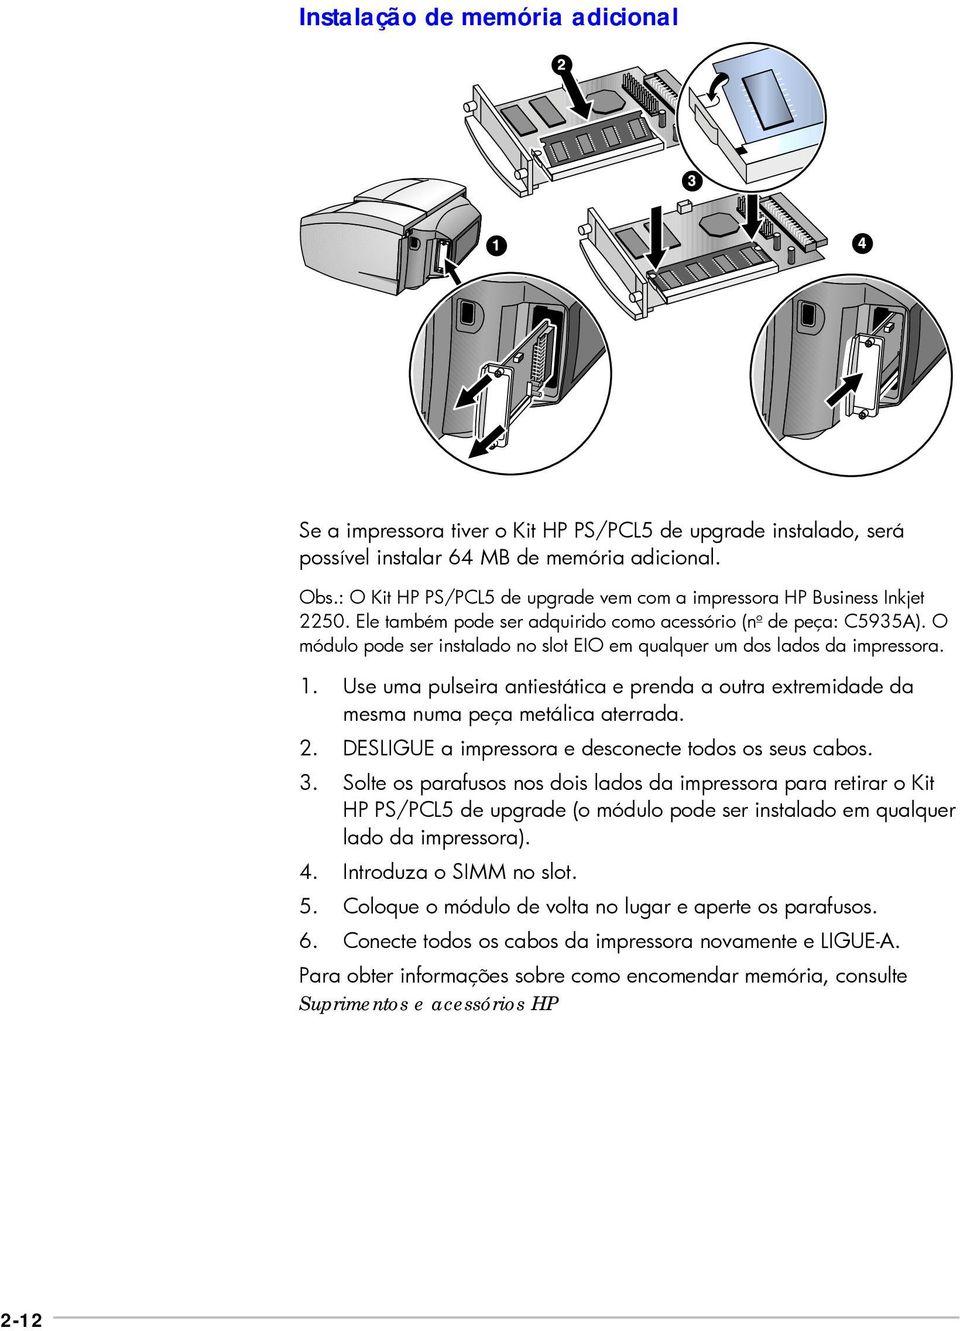 O módulo pode ser instalado no slot EIO em qualquer um dos lados da impressora. 1. Use uma pulseira antiestática e prenda a outra extremidade da mesma numa peça metálica aterrada. 2.